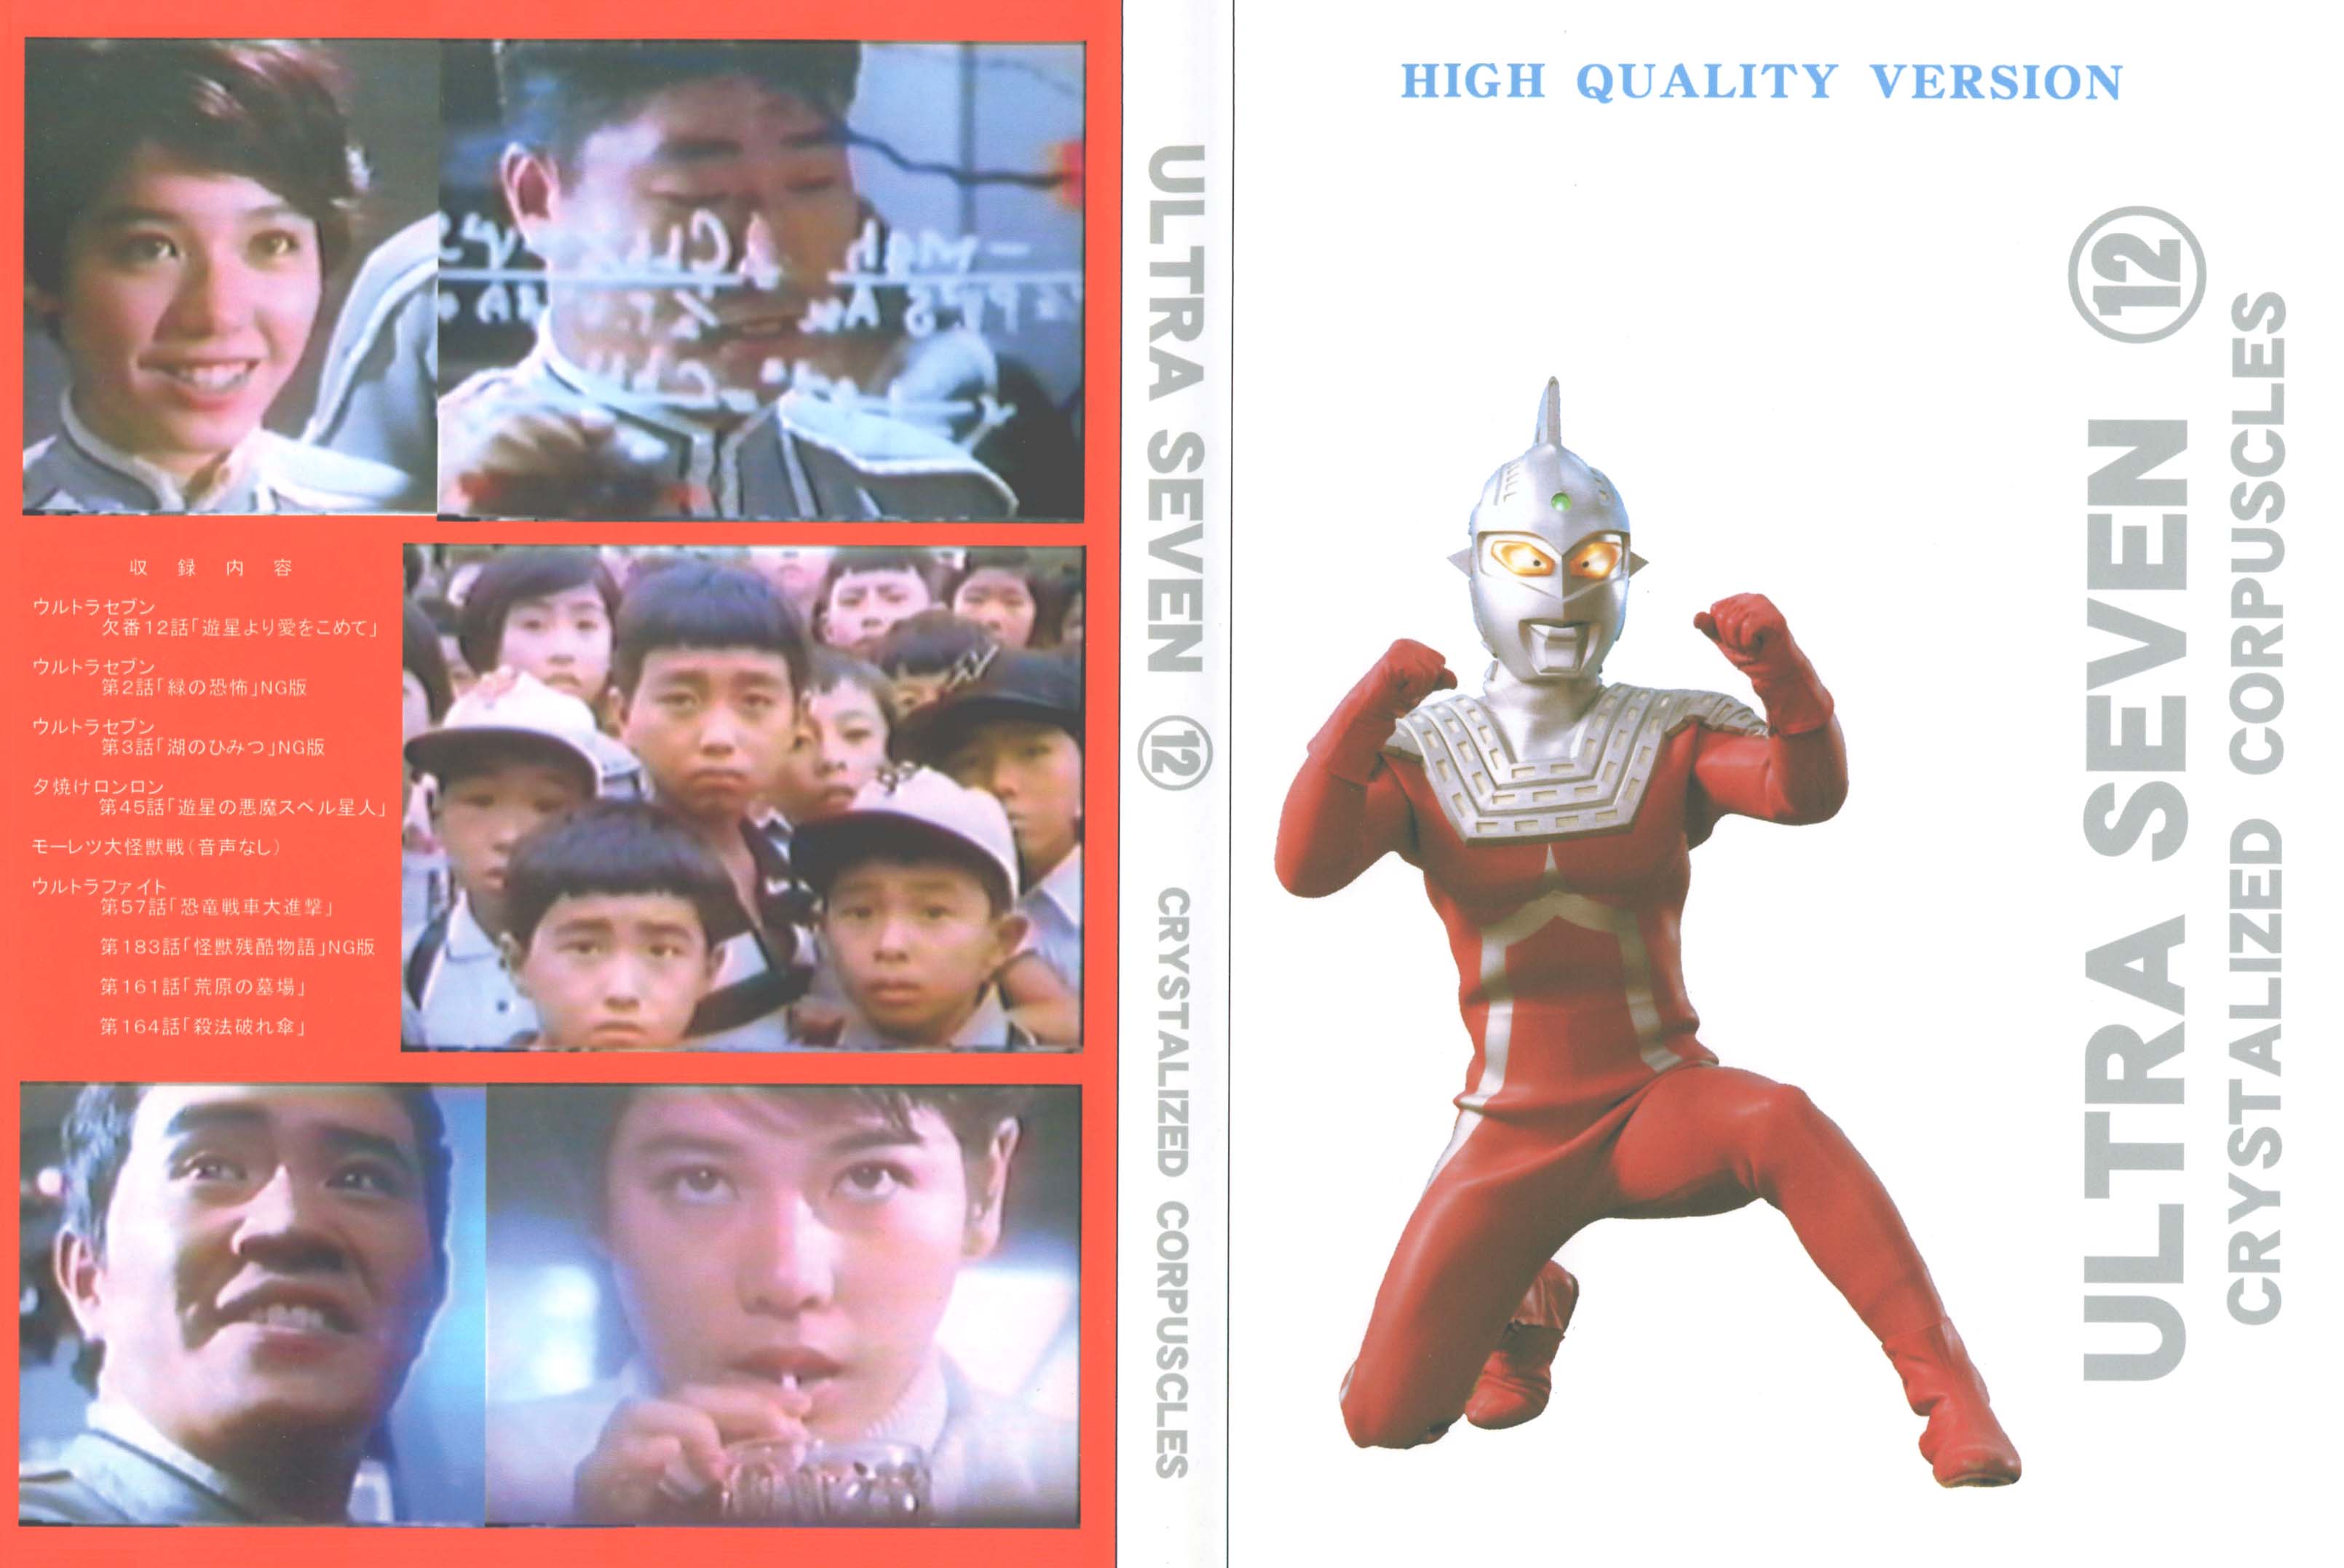 ウルトラセブン DVD vol.1 - DVD/ブルーレイ